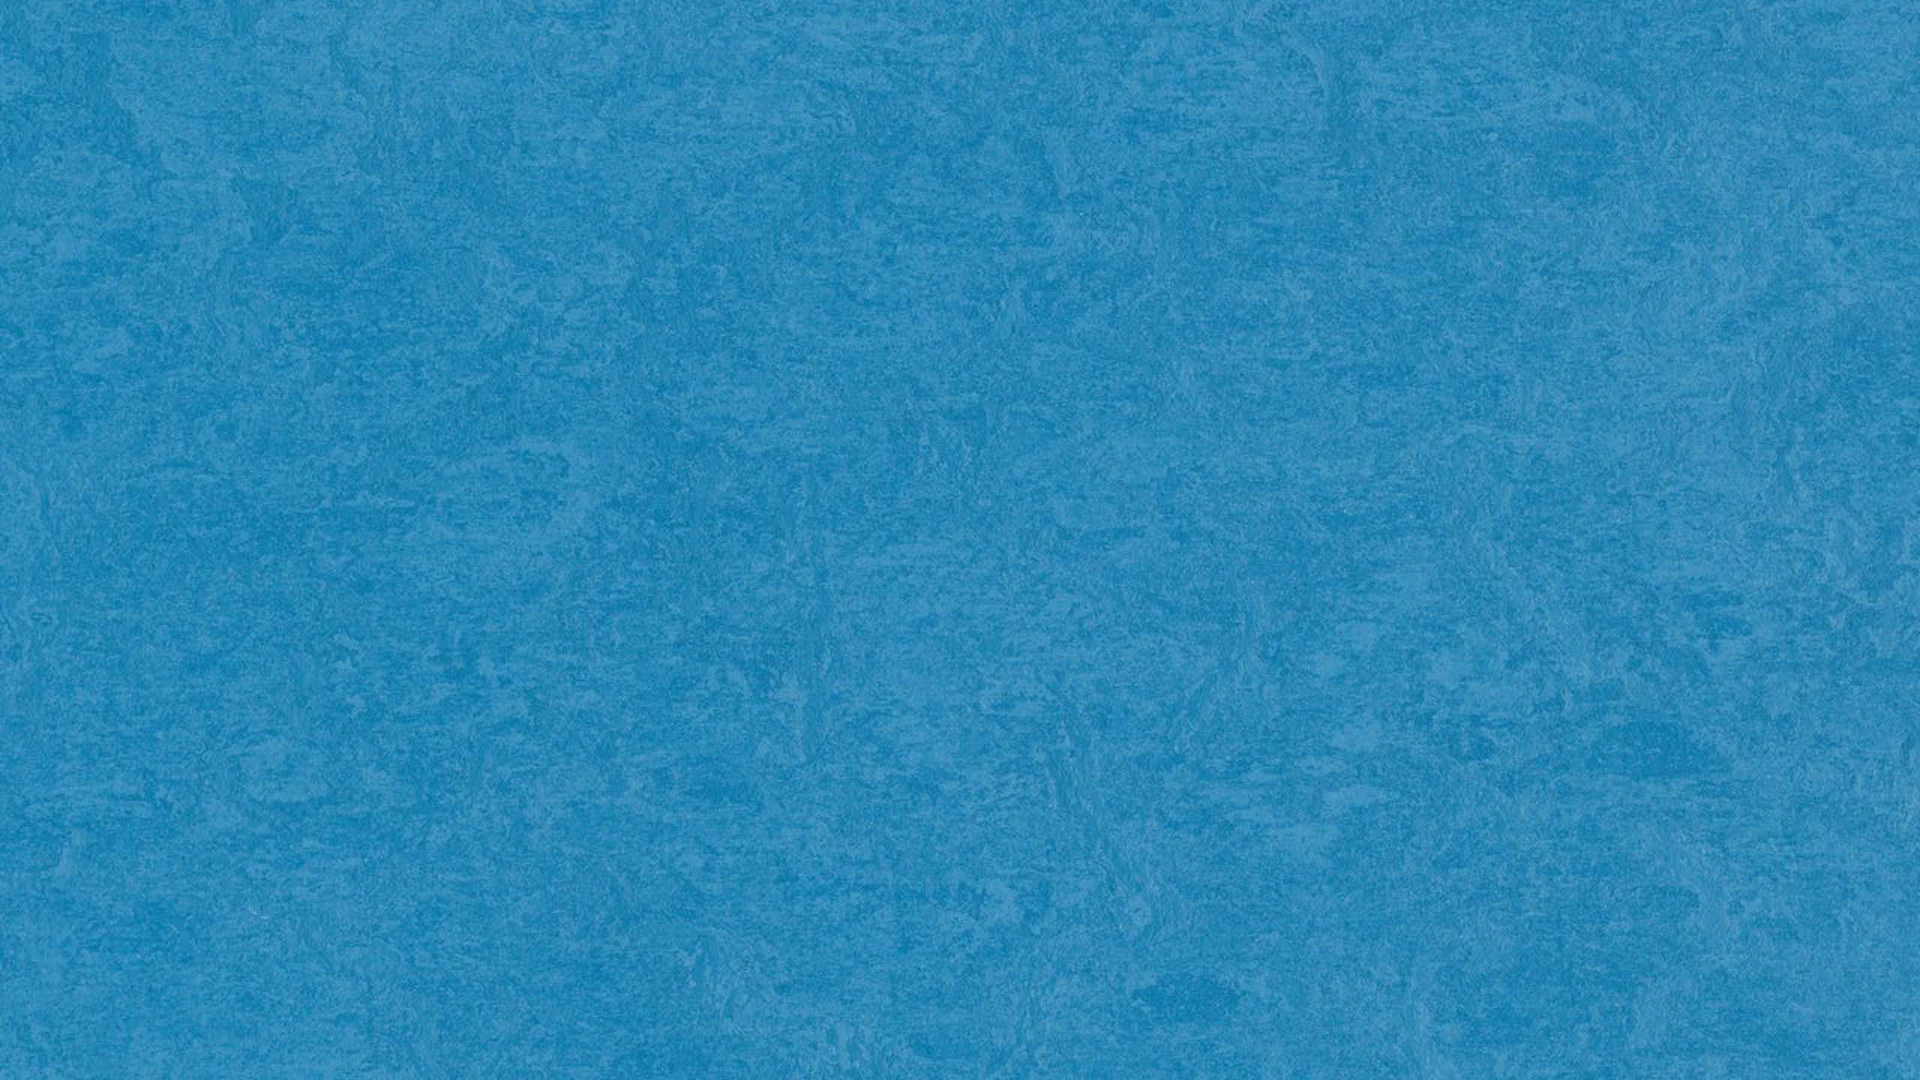 Forbo Linoleum Marmoleum Fresco - Bleu grec 3264